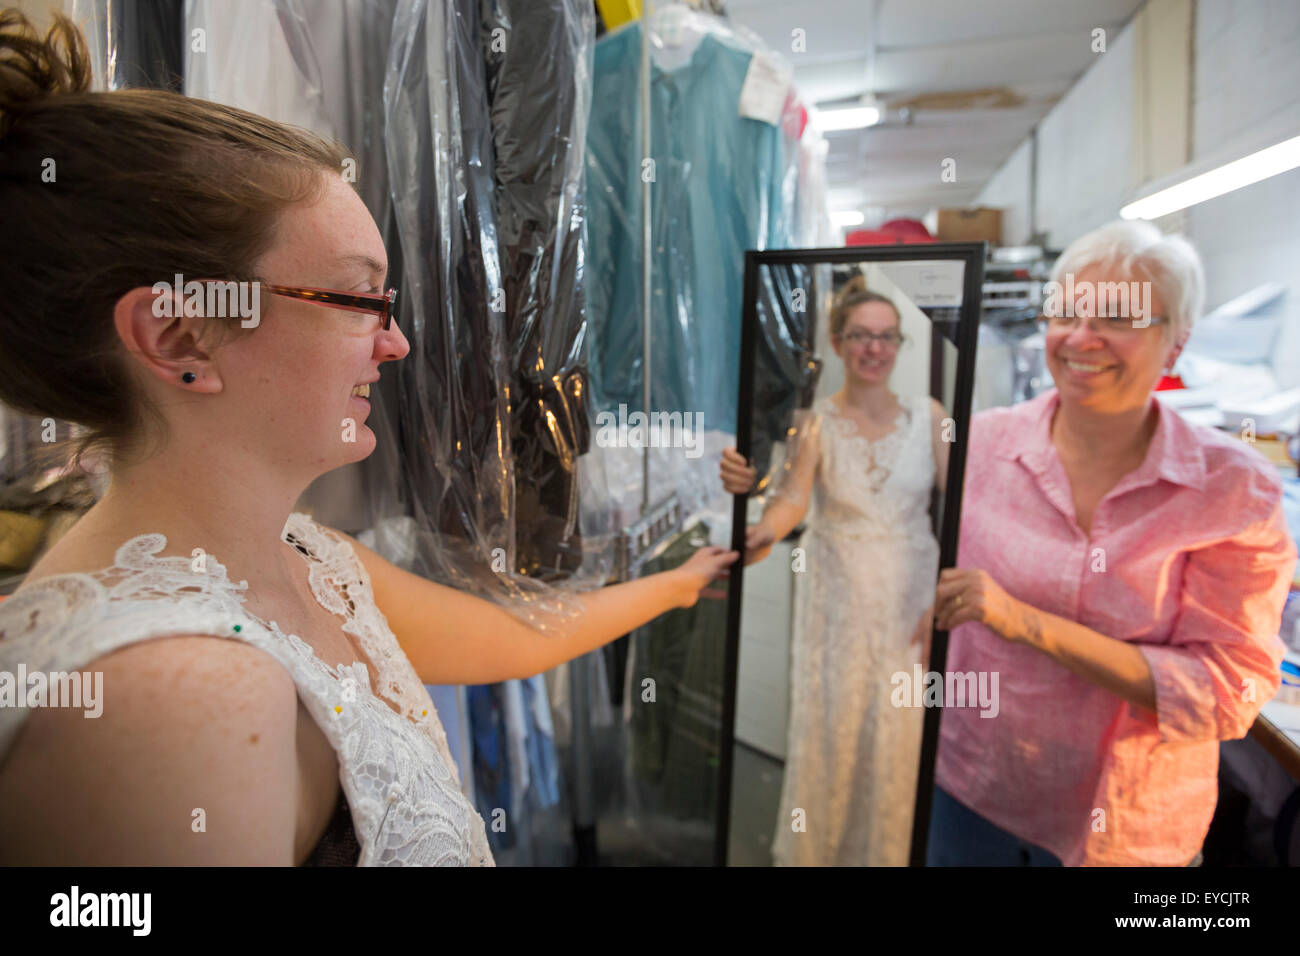 Broomfield, Colorado - eine junge Frau versucht auf ihrem unvollendeten Hochzeit Kleid wie ihre Mutter Uhren. Stockfoto